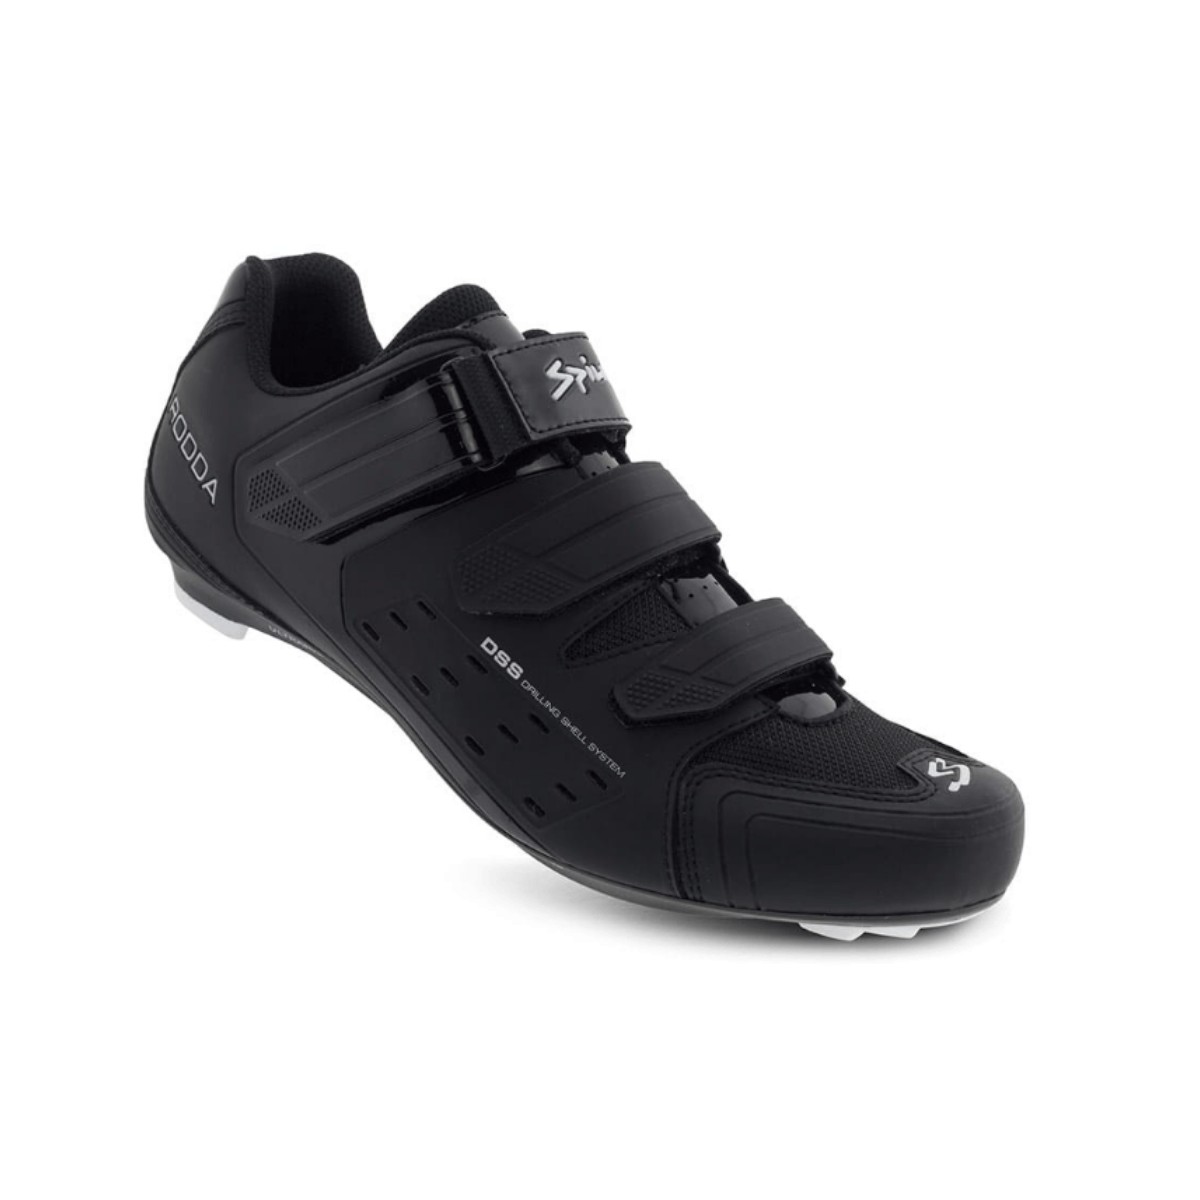 Spiuk Rodda Road Shoes Matte Black, Size 41